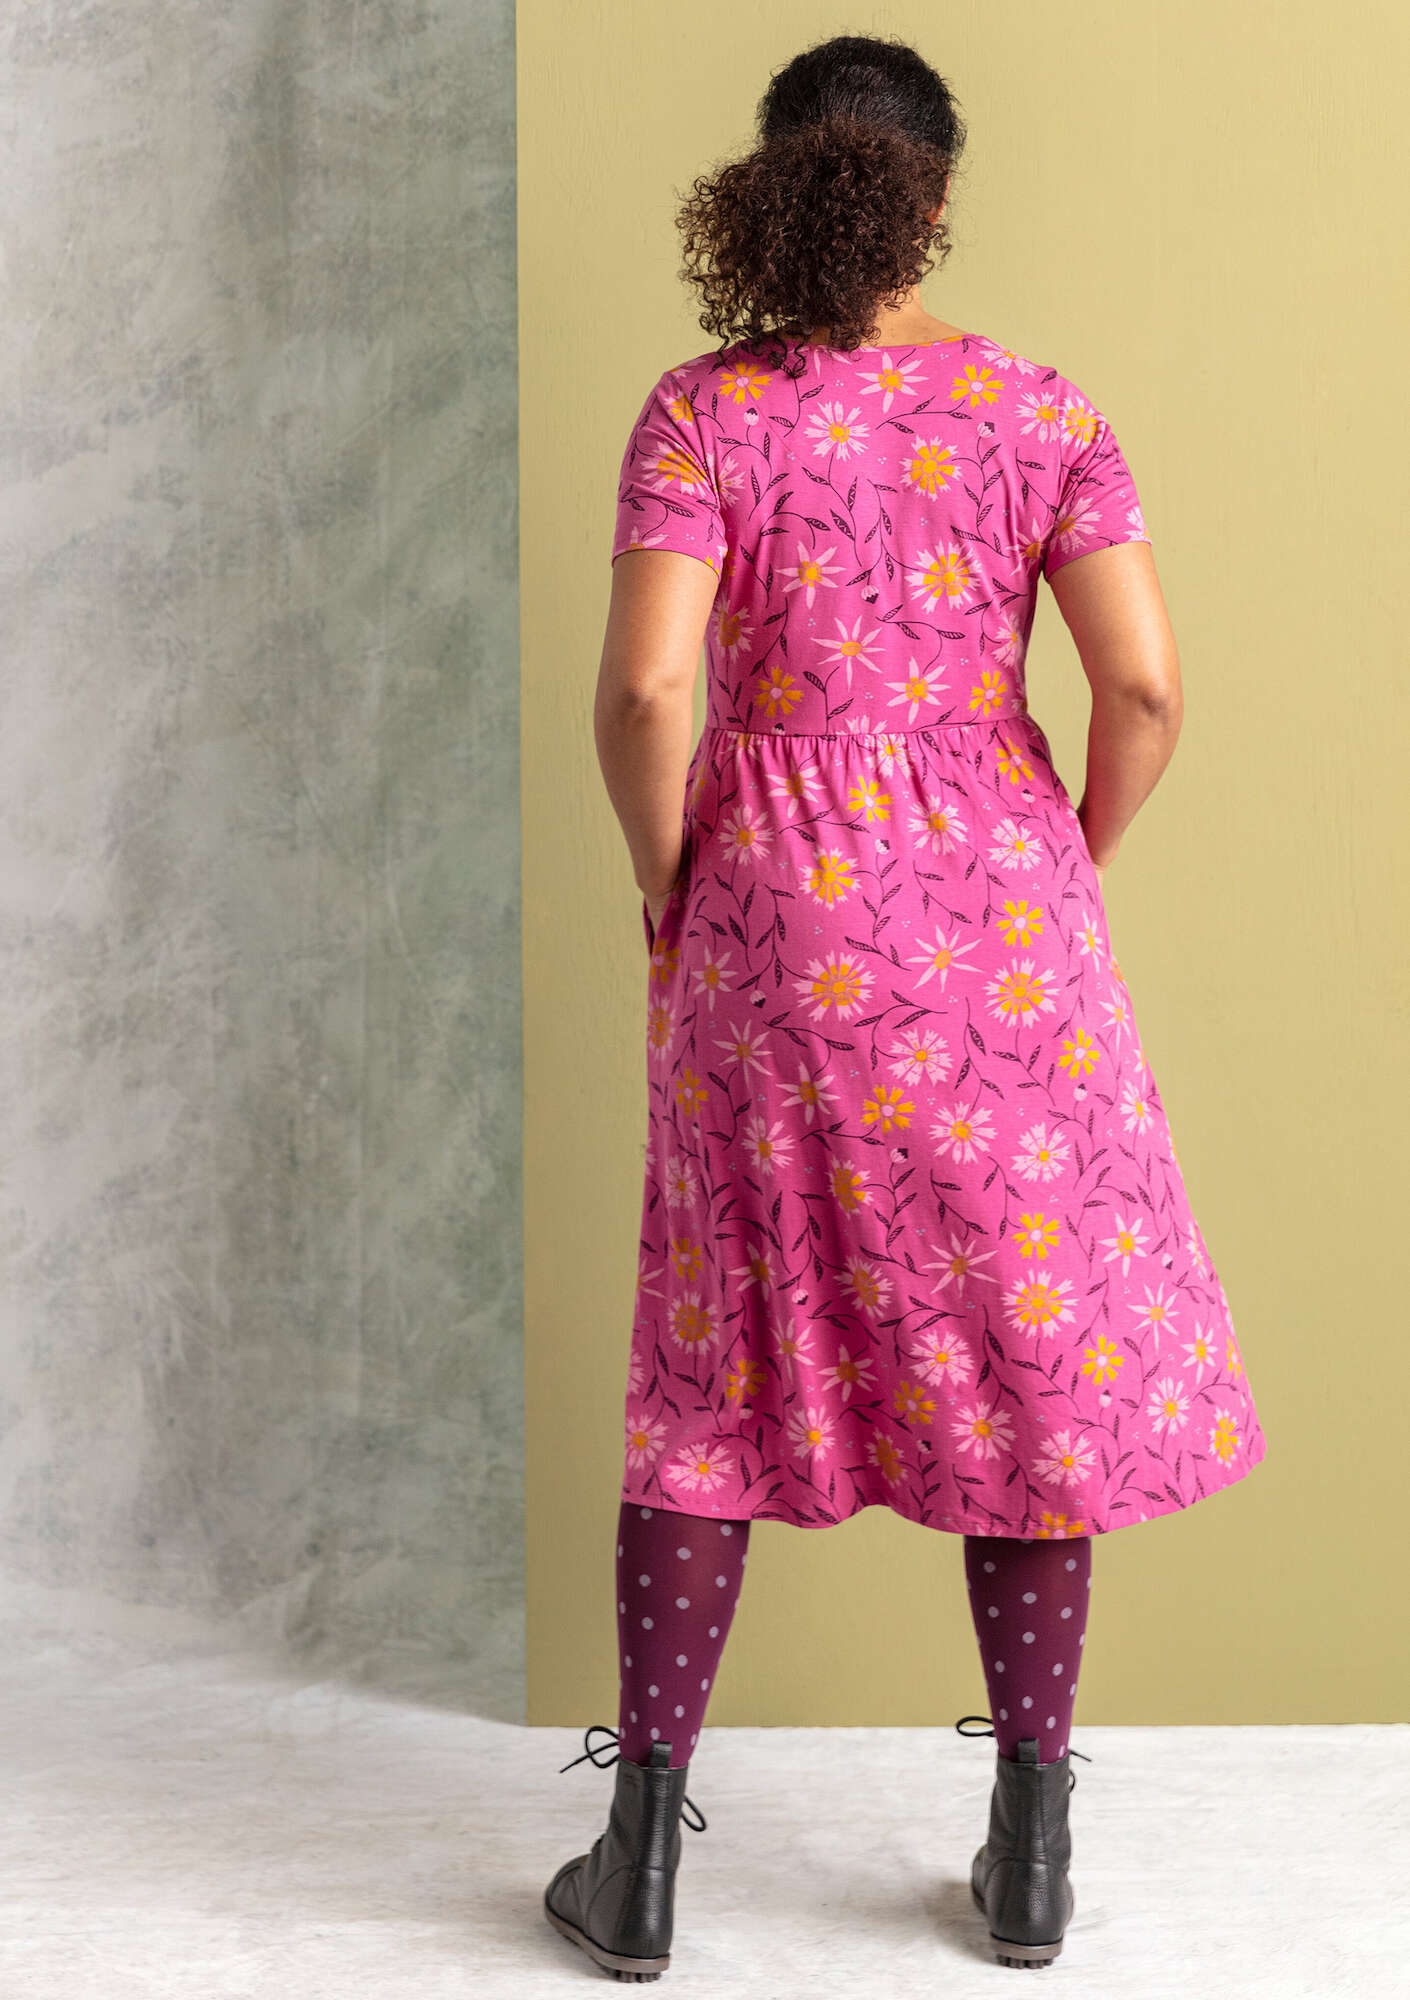 Trikåklänning  Isolde  i ekologisk bomull/modal rosa orkidé/mönstrad